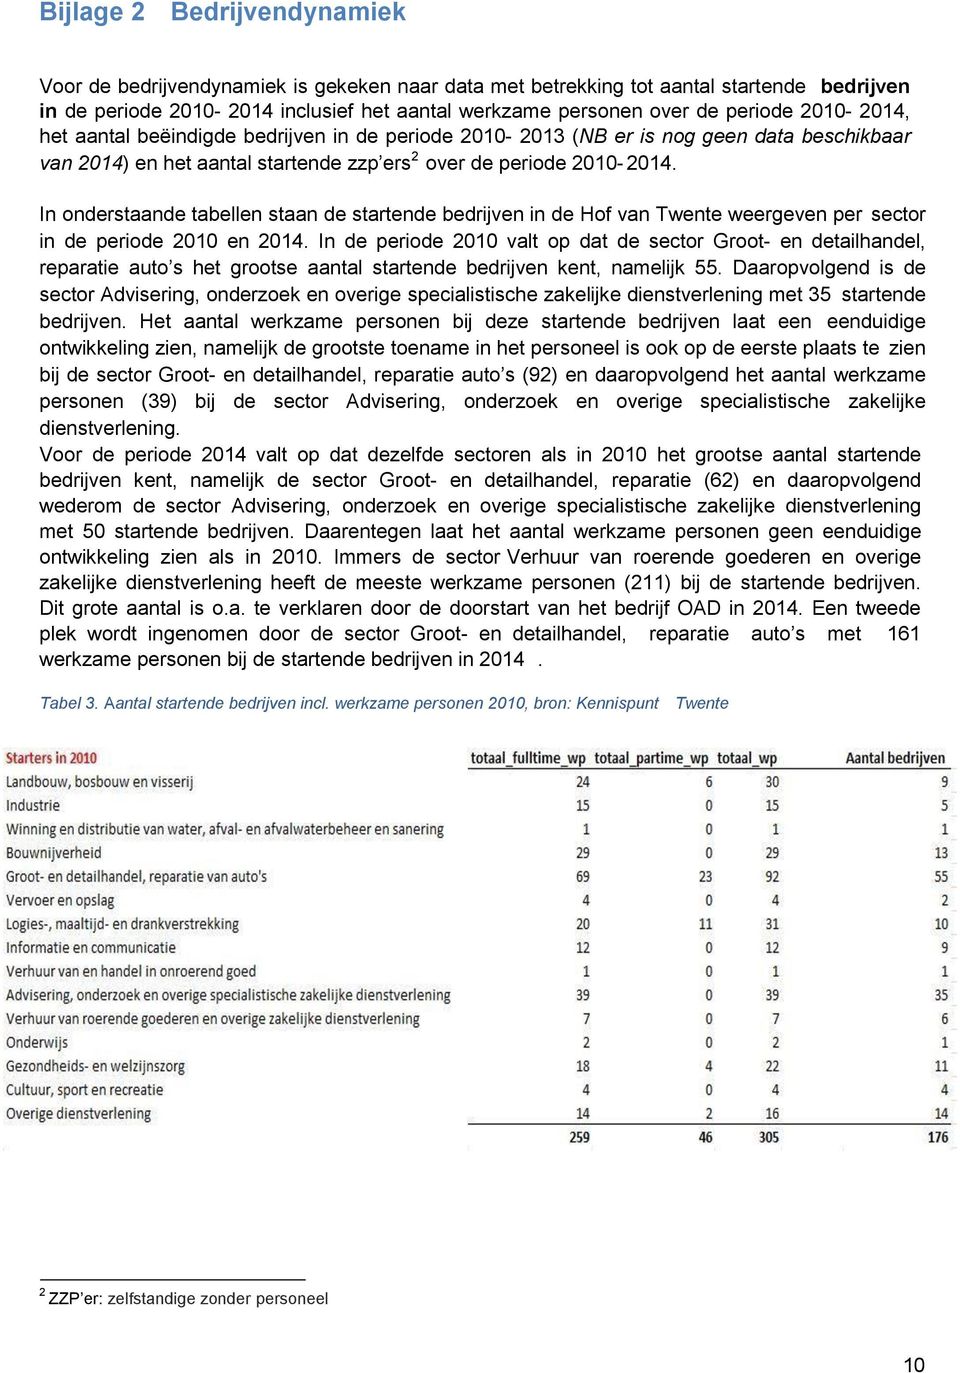 In onderstaande tabellen staan de startende bedrijven in de Hof van Twente weergeven per sector in de periode 2010 en 2014.